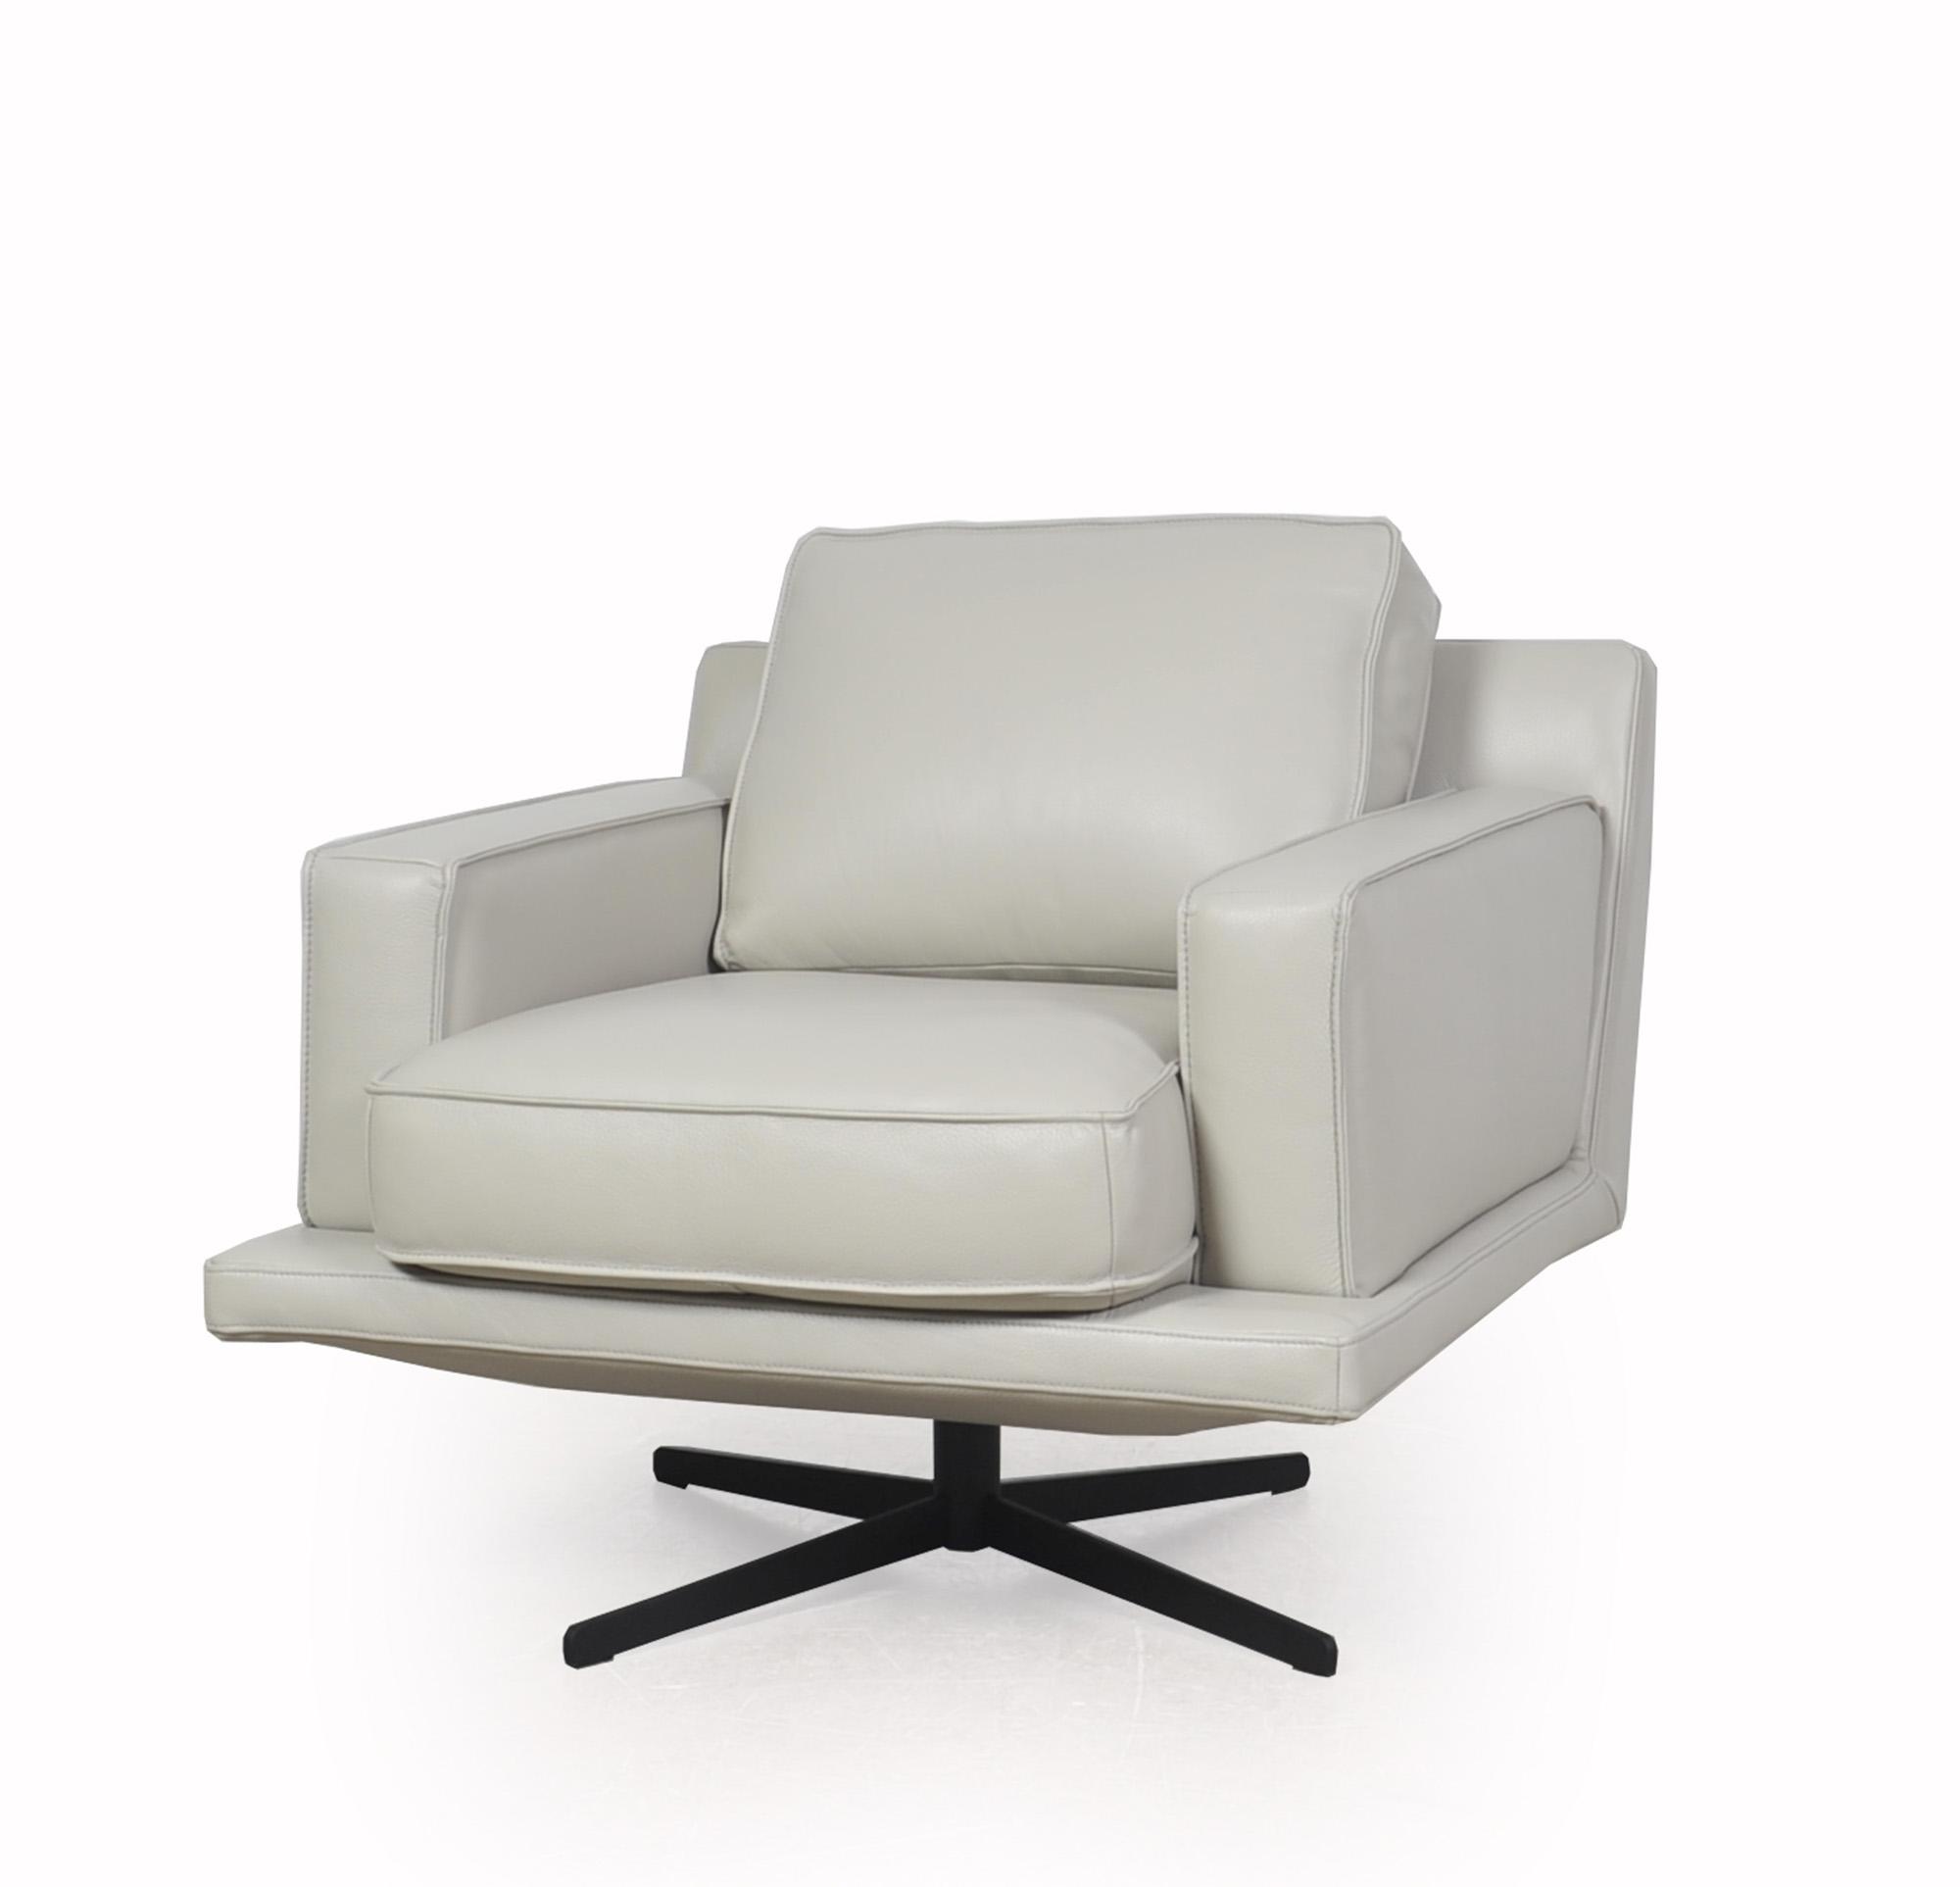 Modern Swivel Chair Mercier 585 58506BS1383 in Light Gray Top grain leather